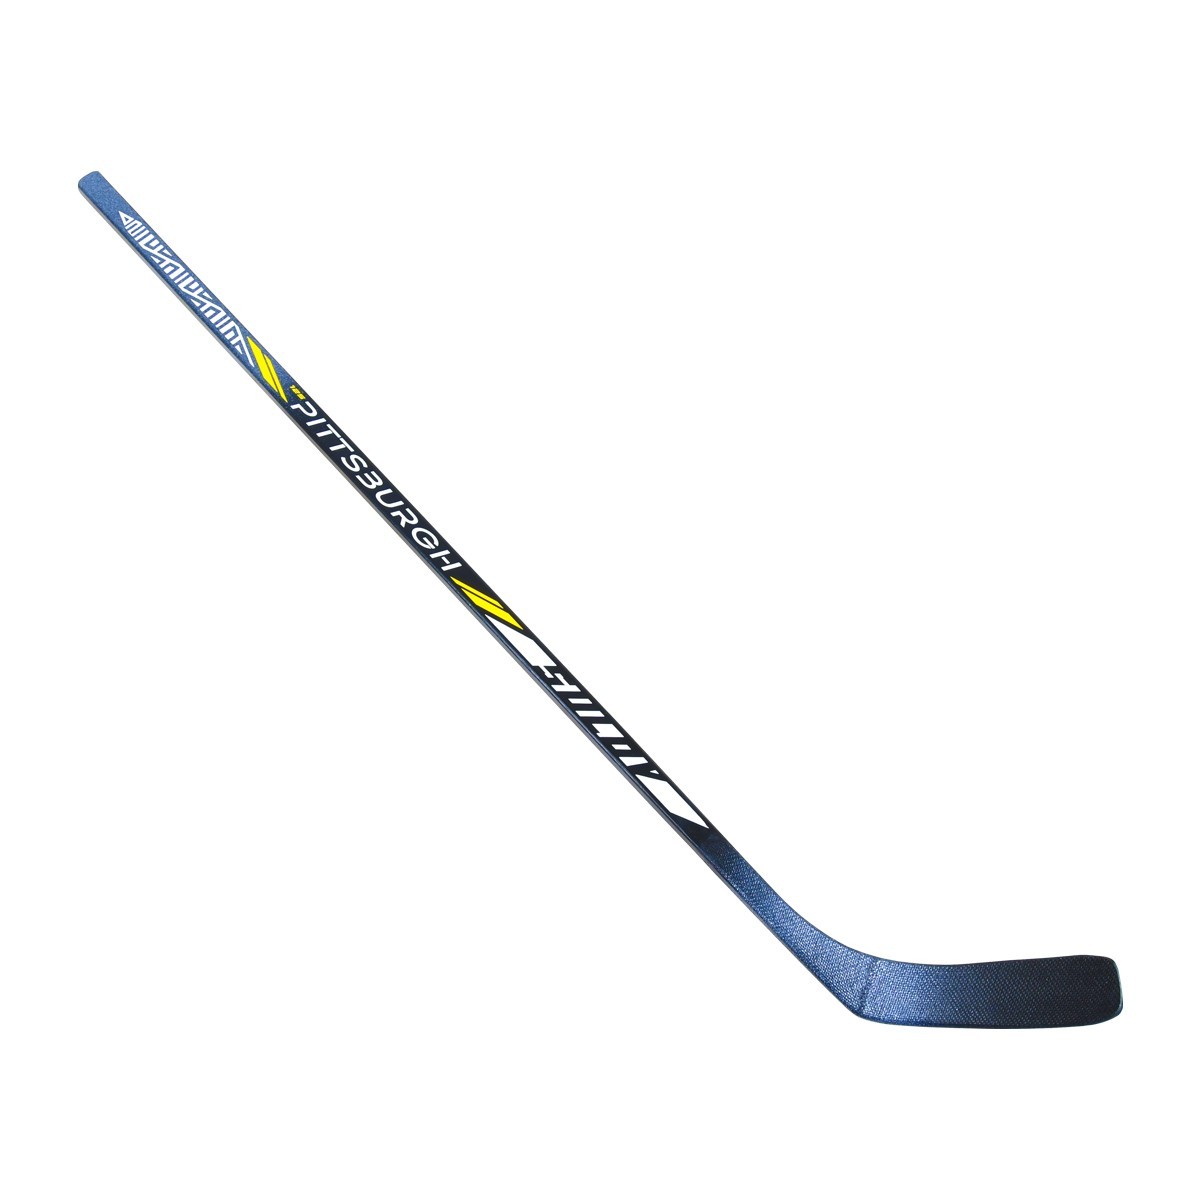 Hokejka SULOV PITSBURG, 125cm, levá